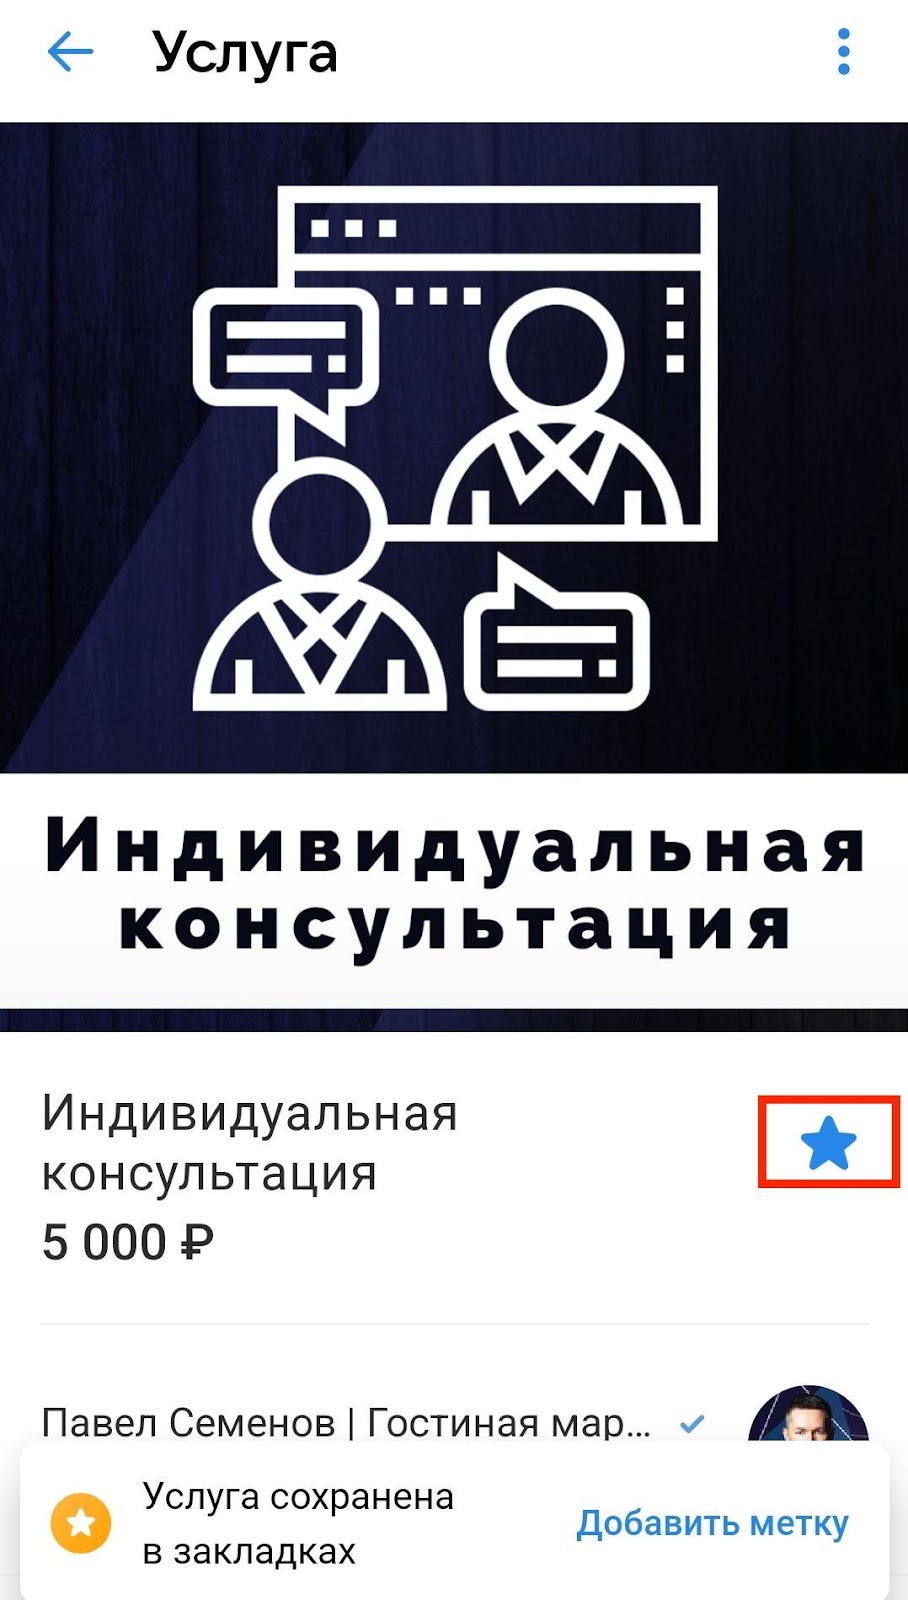 Клипы ВКонтакте: инструкция по созданию